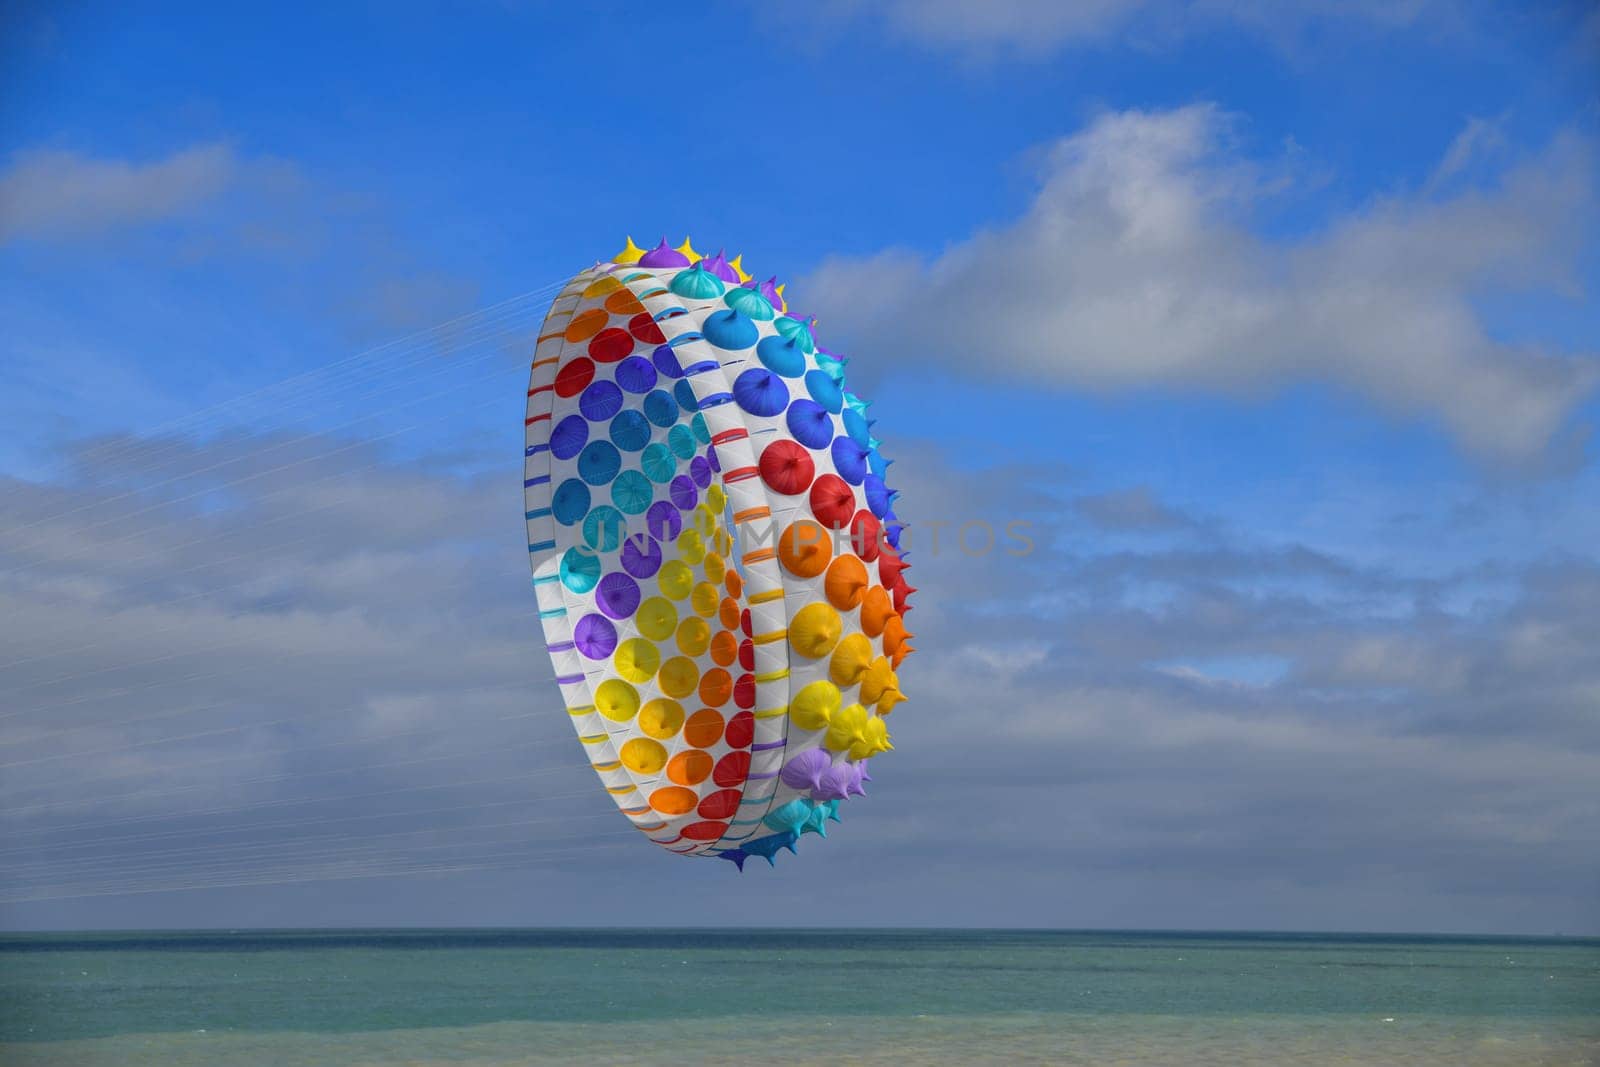 Multicolored air kite at the Atlantic ocean